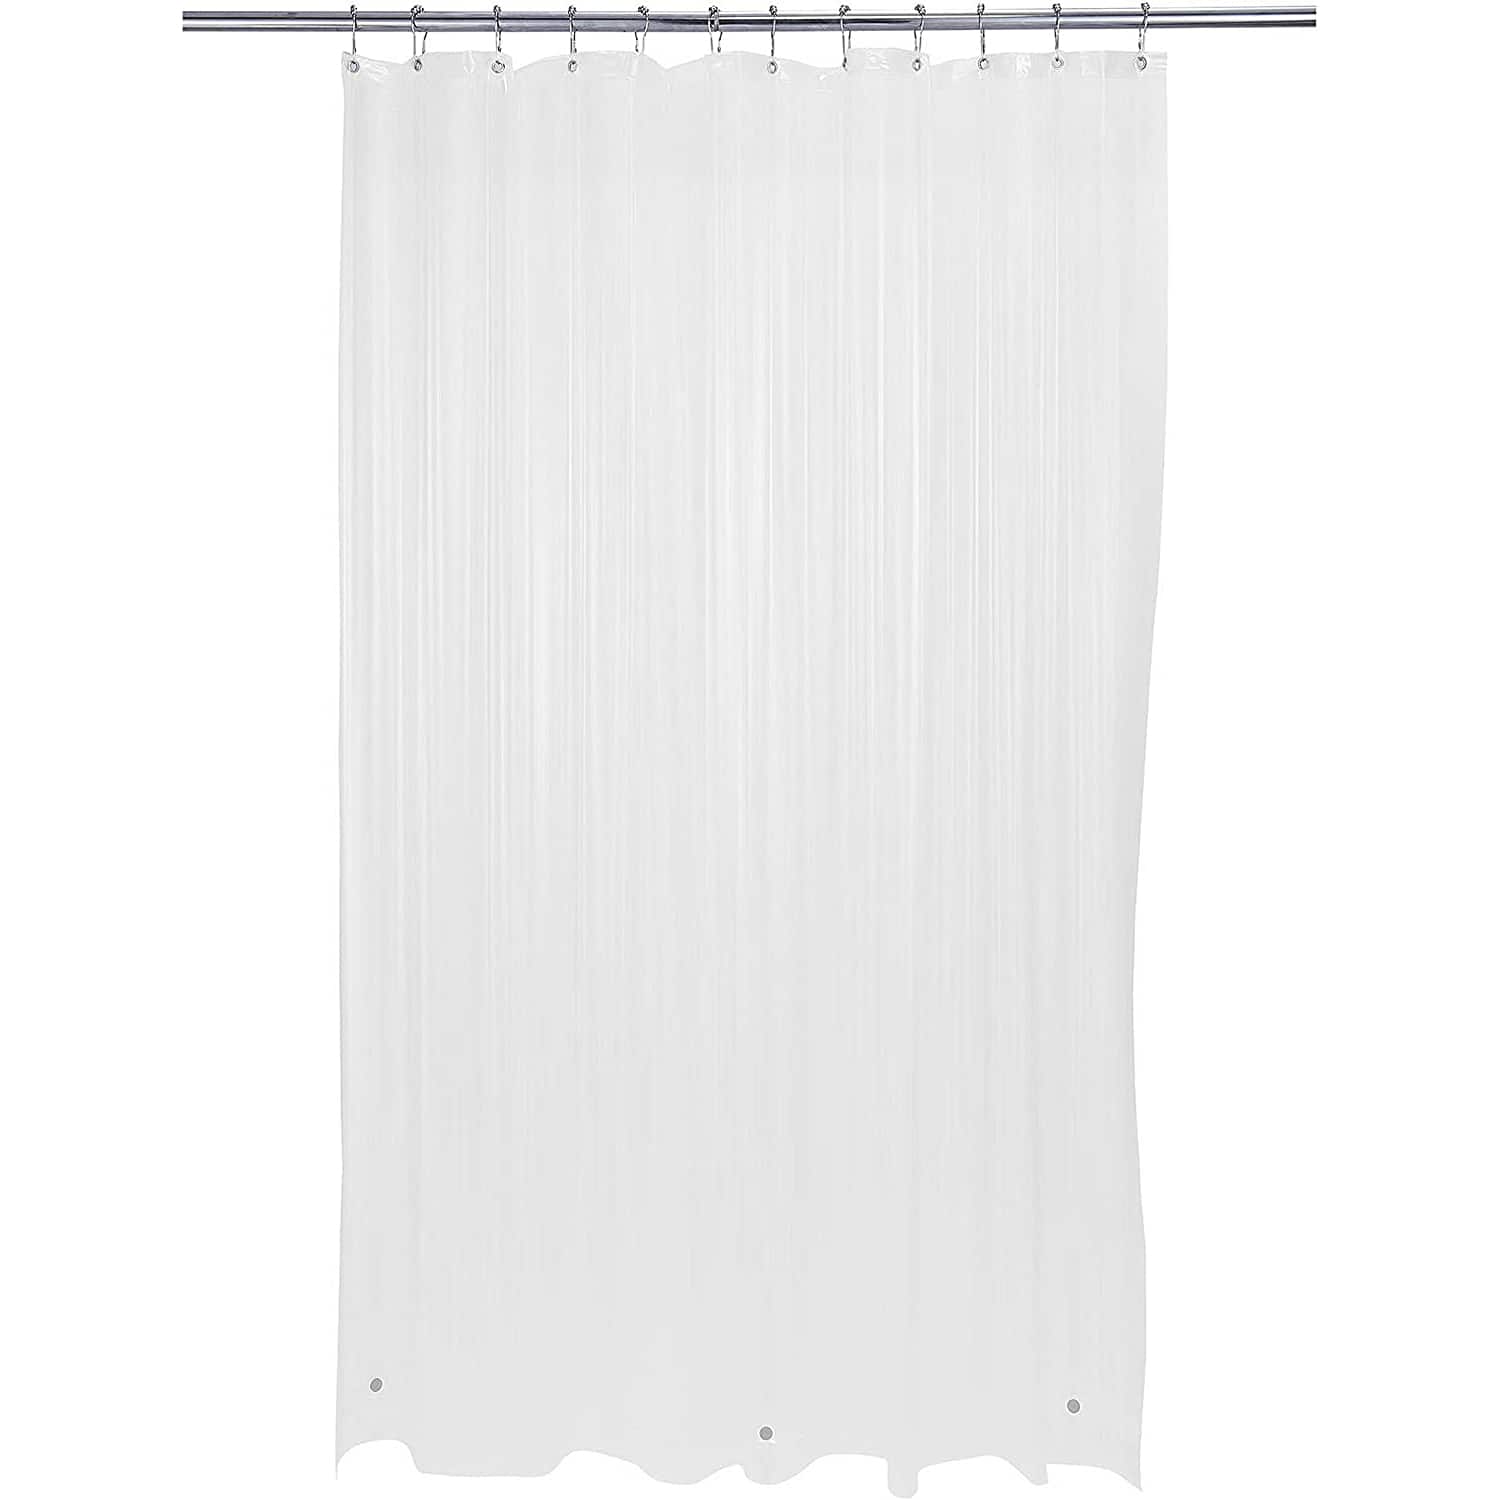 Bath Bliss PEVA Shower Curtain Liner